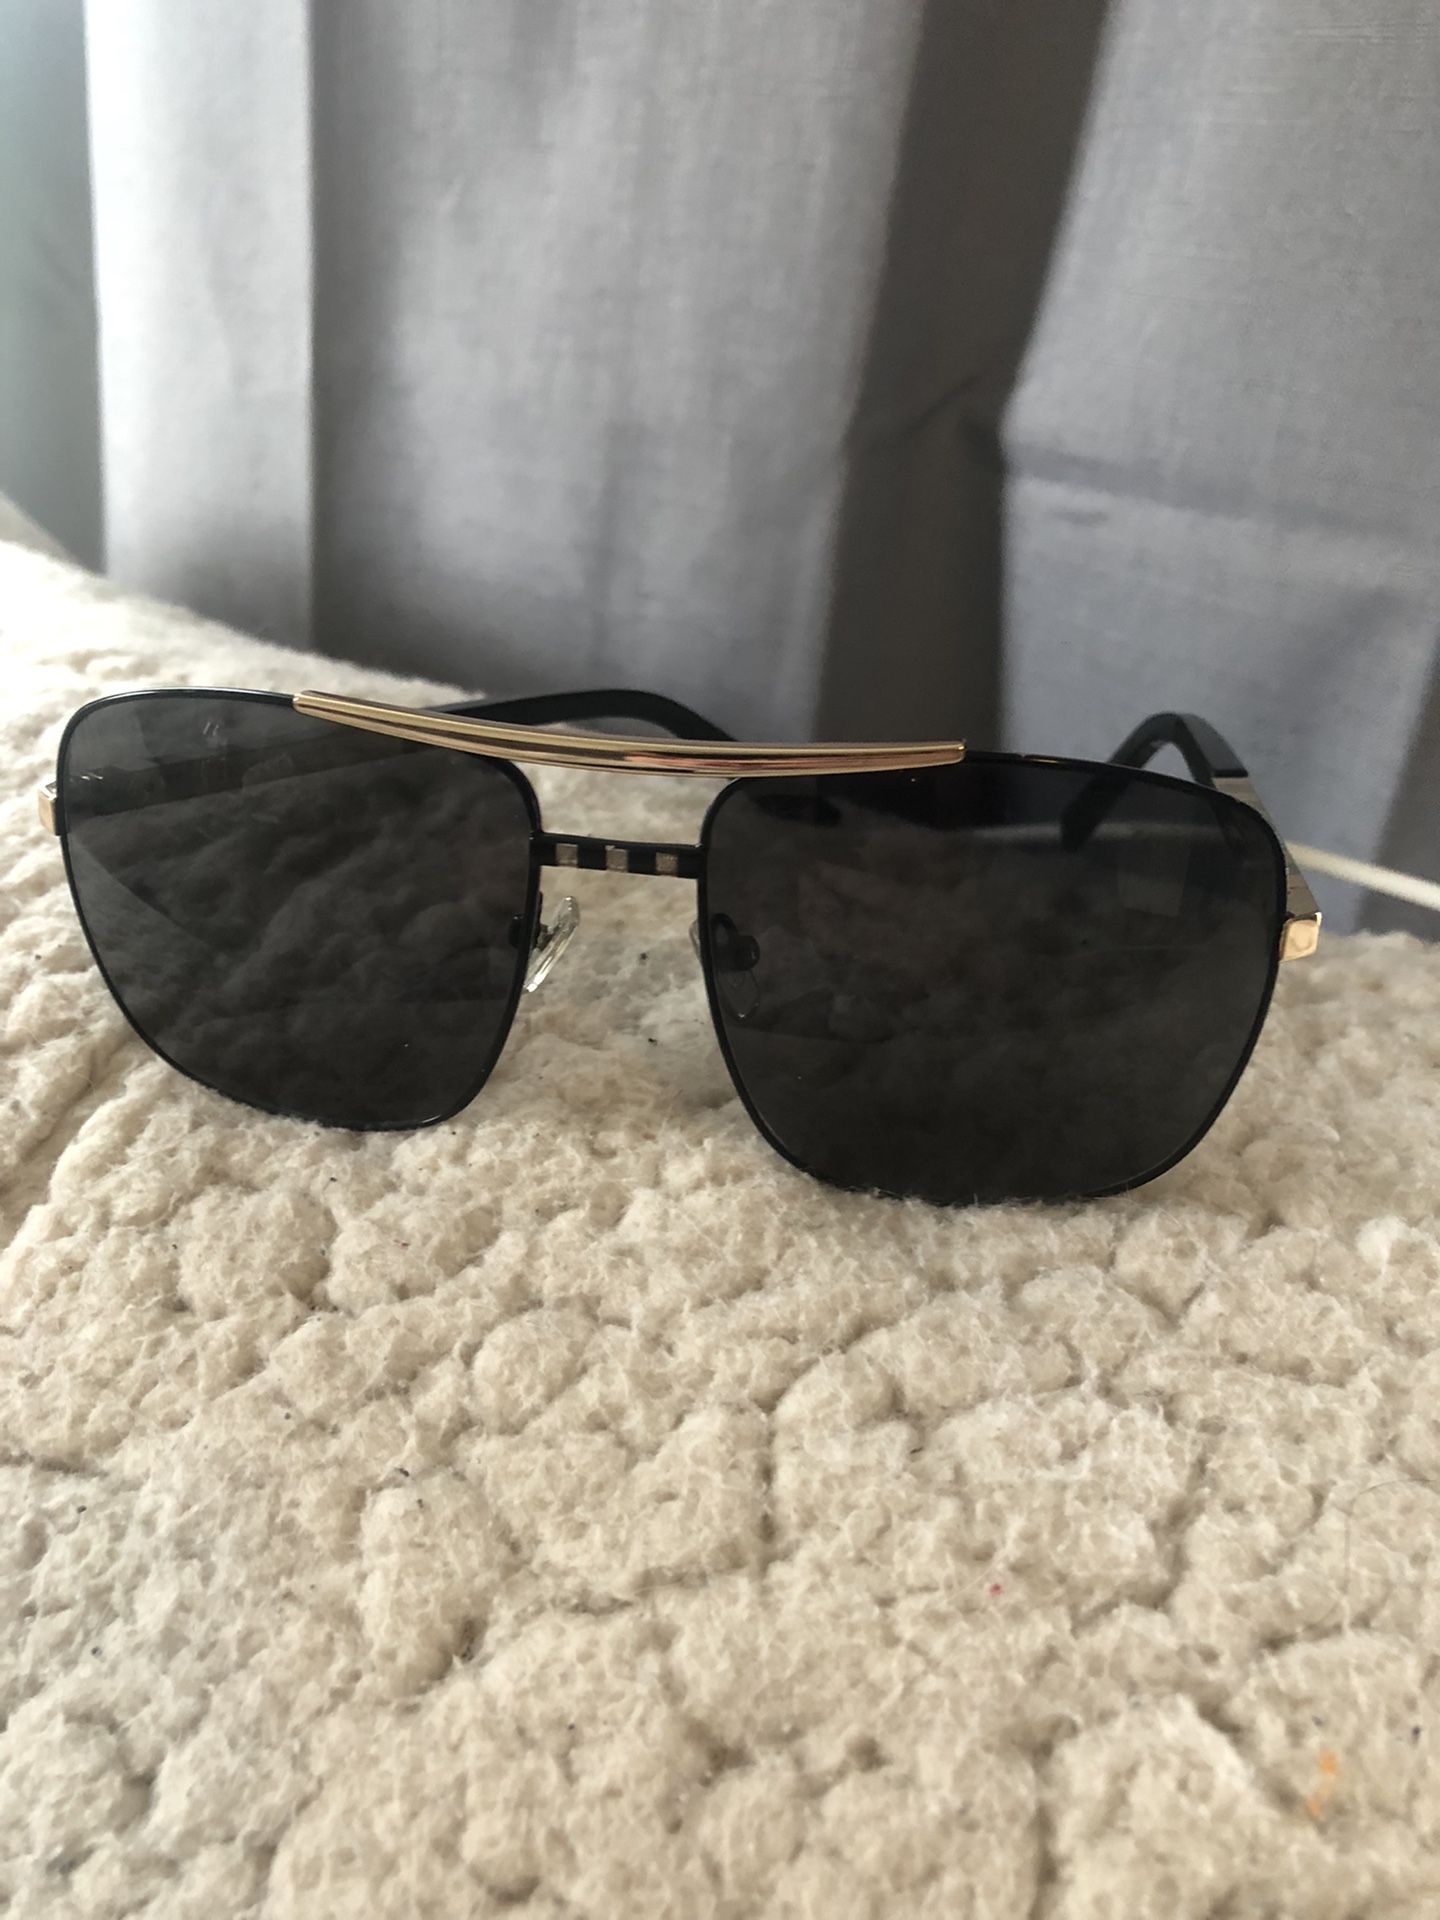 lv attitude sunglasses black